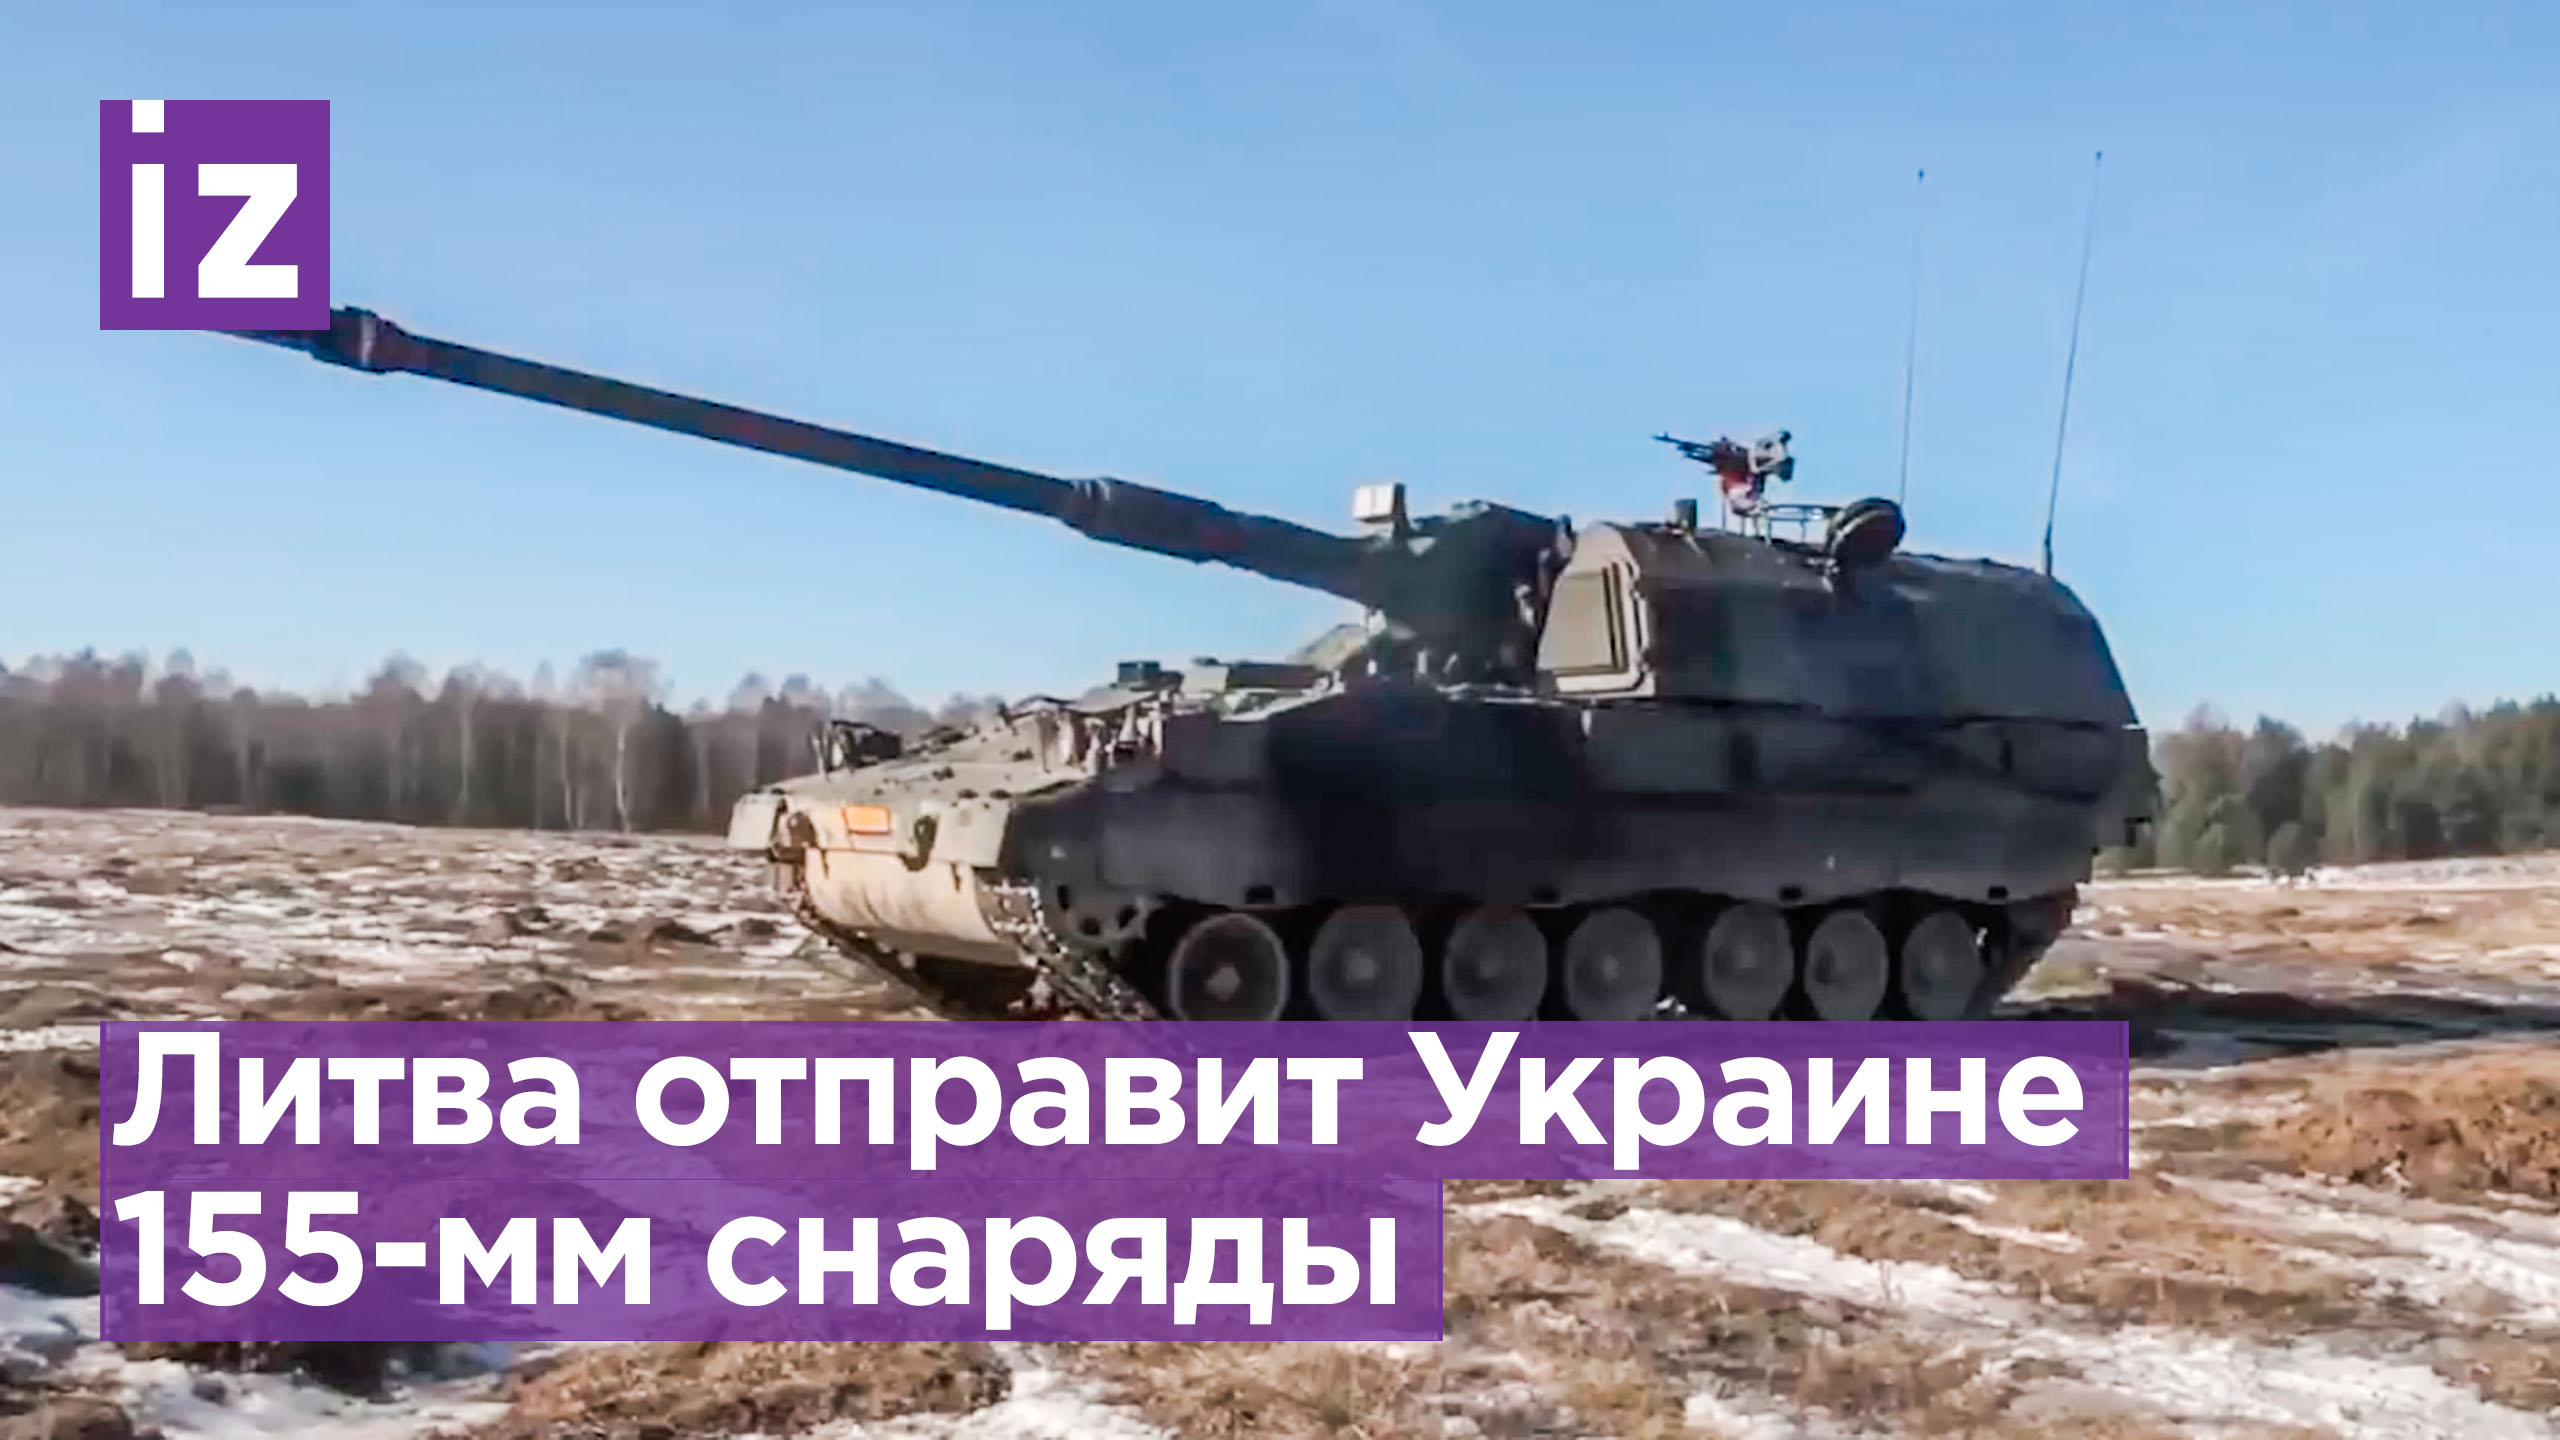 Литва передаст Украине артиллерийские снаряды калибра 155 мм / Известия